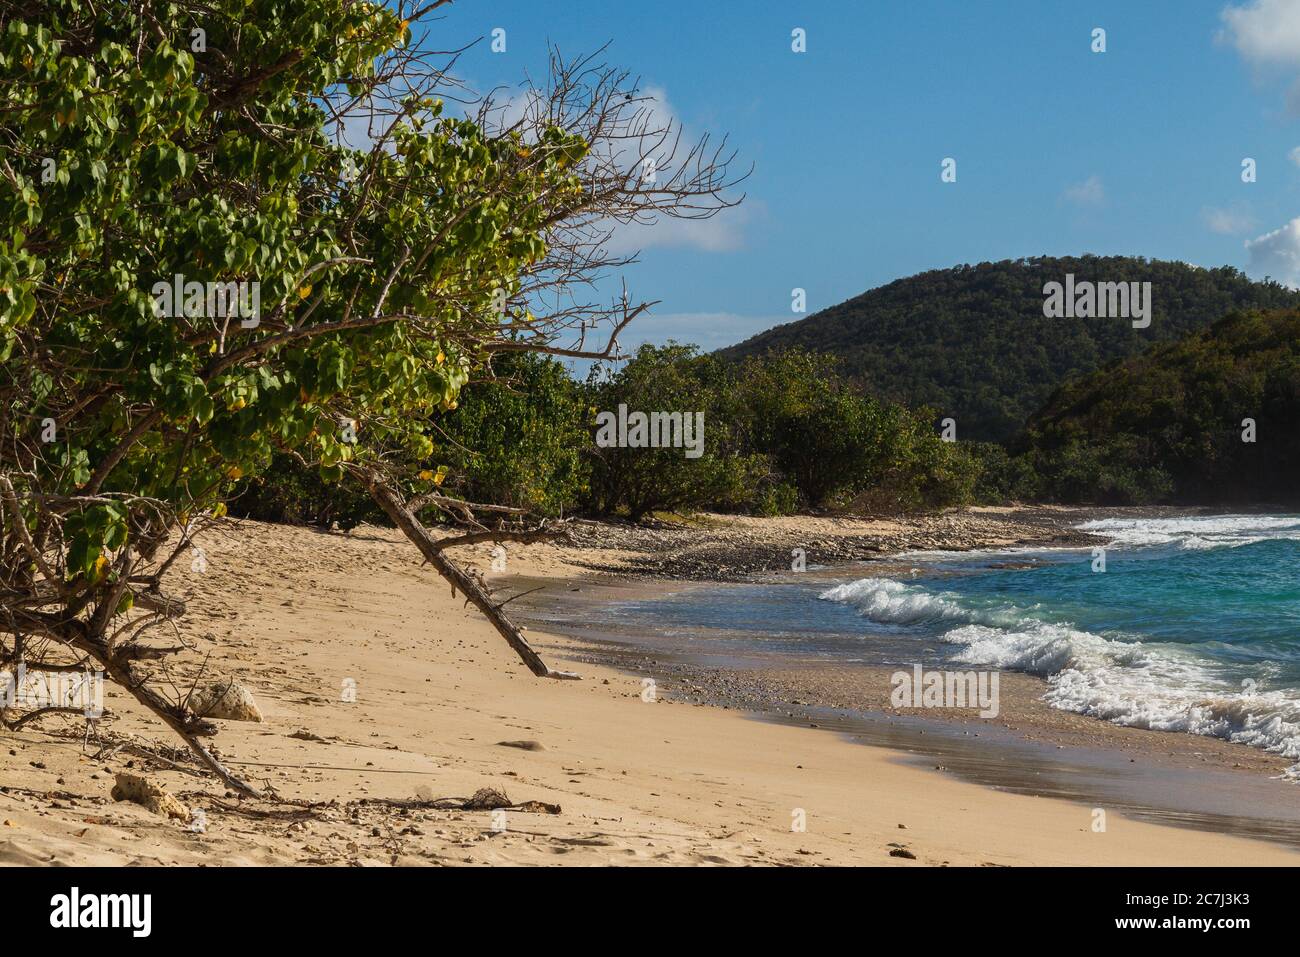 An empty Carlos Rosario Beach in Culebra, Puerto Rico Stock Photo